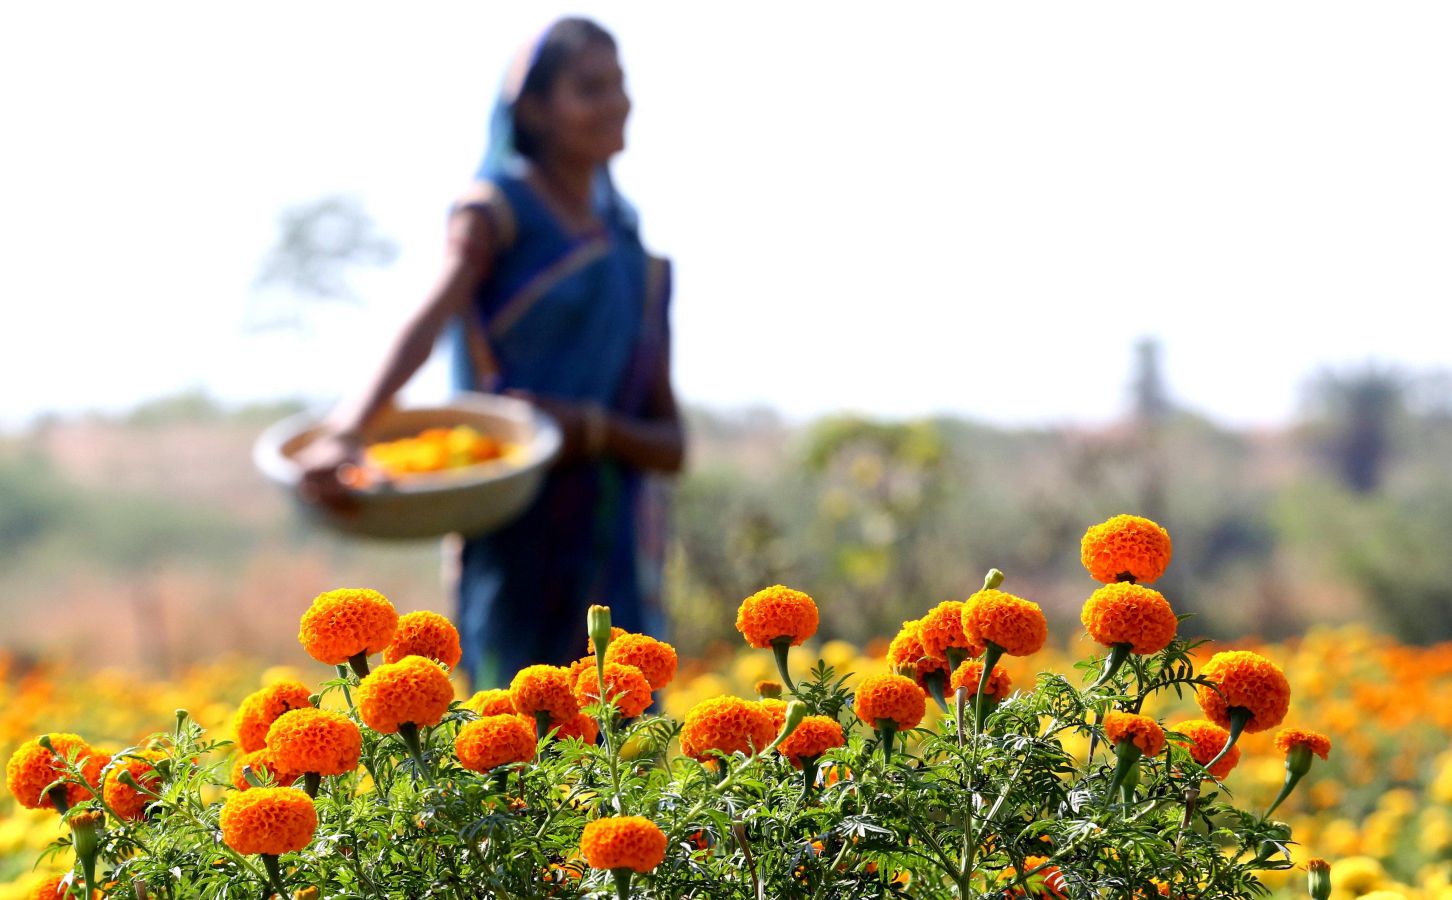 La flor del amaranto globoso se utiliza para formar guirnaldas y adorar a los dioses y animales durante el Festival del Diwali que comienza a celebrarse el 5 de noviembre. Por eso este viernes multitud de mujeres han iniciado la recolecta de estas flores. El festival, de cinco días de duración, es el segundo mayor evento para los hindúes en Nepal. 